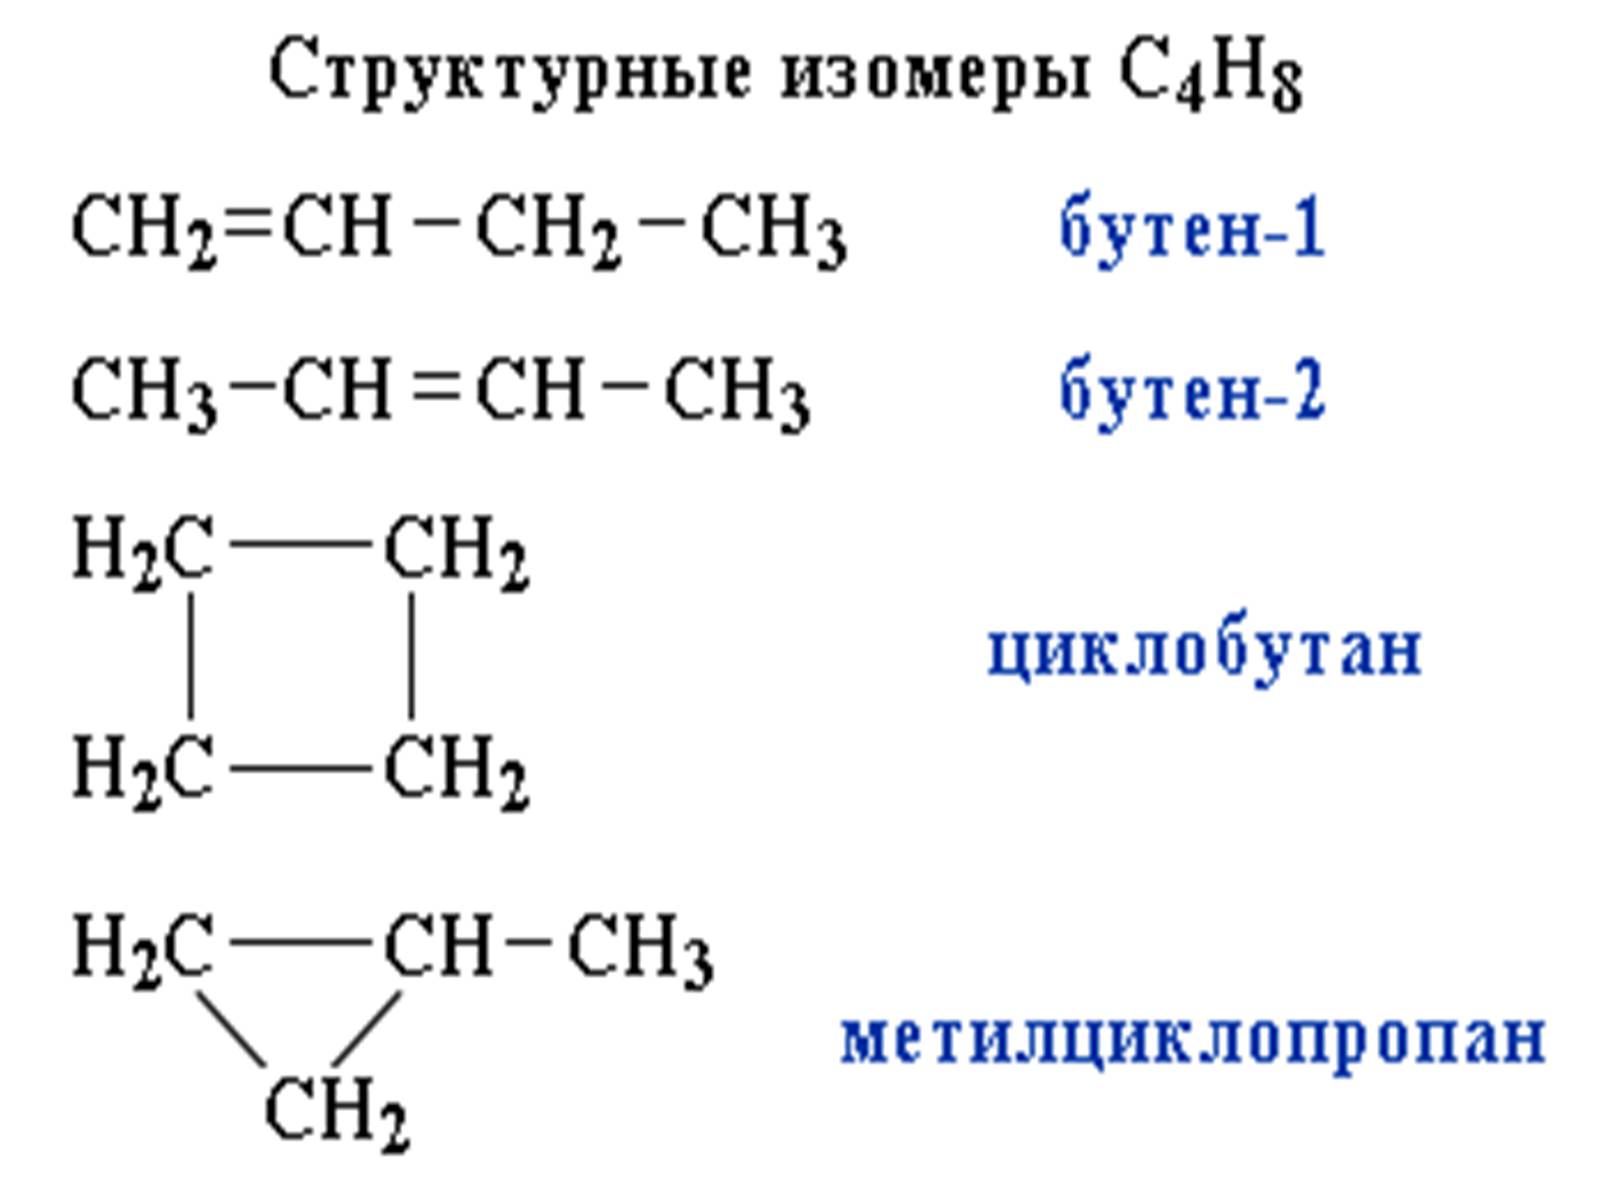 Цис бутан. Структурный изомер алкана. Структурные формулы соединений изомеров. Формулы соединений изомеров. Структурные формулы всех изомеров вещества с4н8.